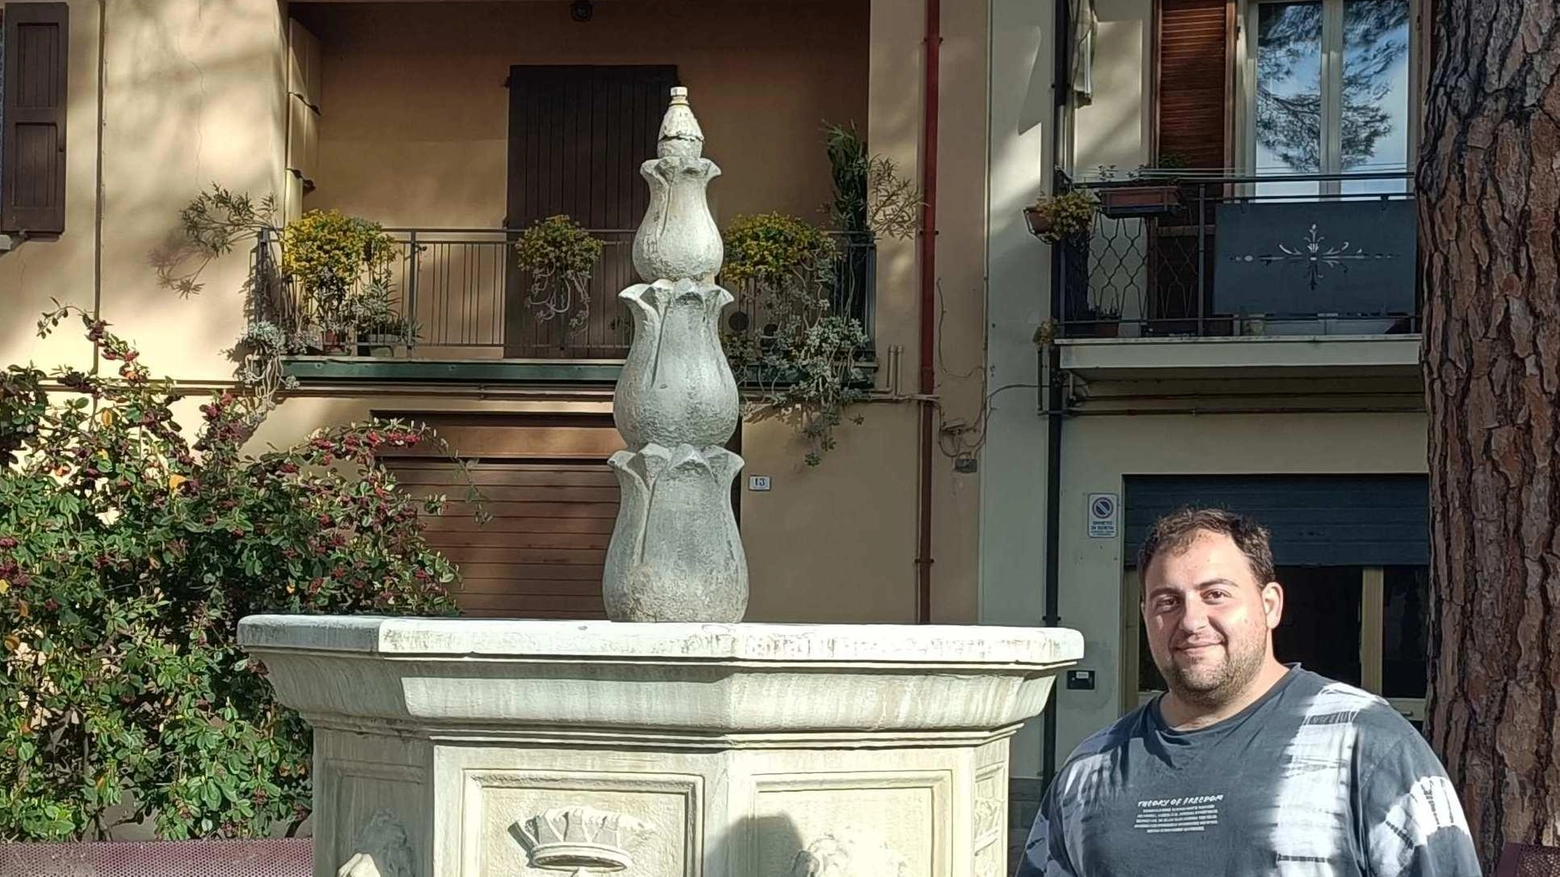 Il leghista Marco Ronchini sollecita la riqualificazione della storica fontana di Piazza Roma a Fontanelice, evidenziando l'importanza simbolica e la necessità di interventi urgenti per preservarla e valorizzarla.